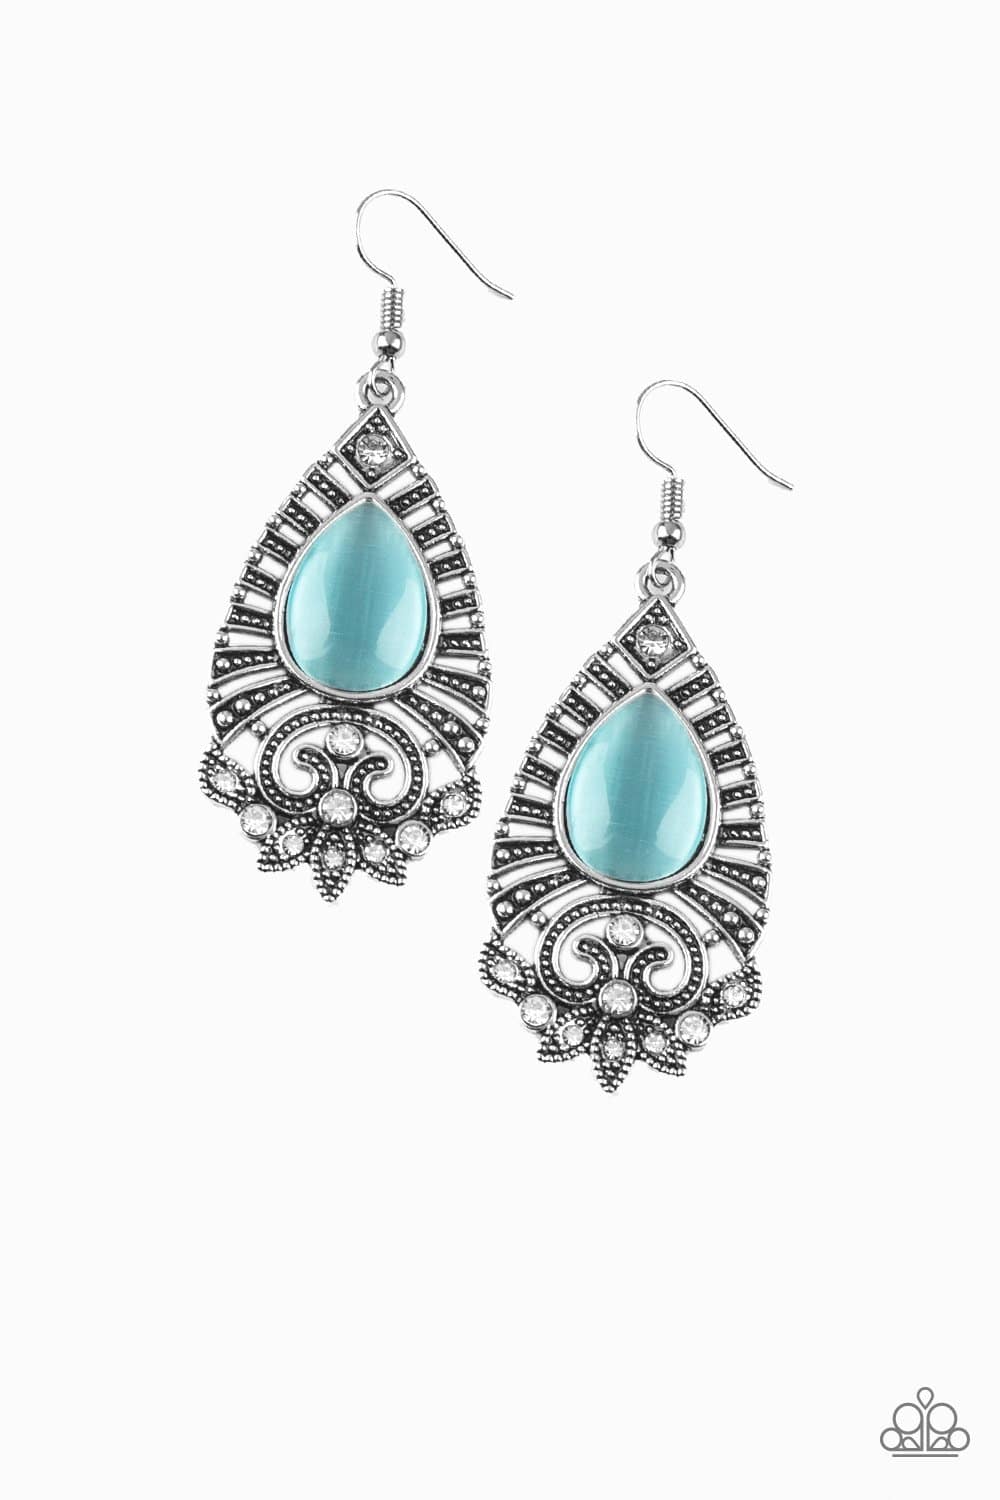 Majestically Malibu - Blue Moonstone Earrings - Paparazzi Accessories - GlaMarous Titi Jewels